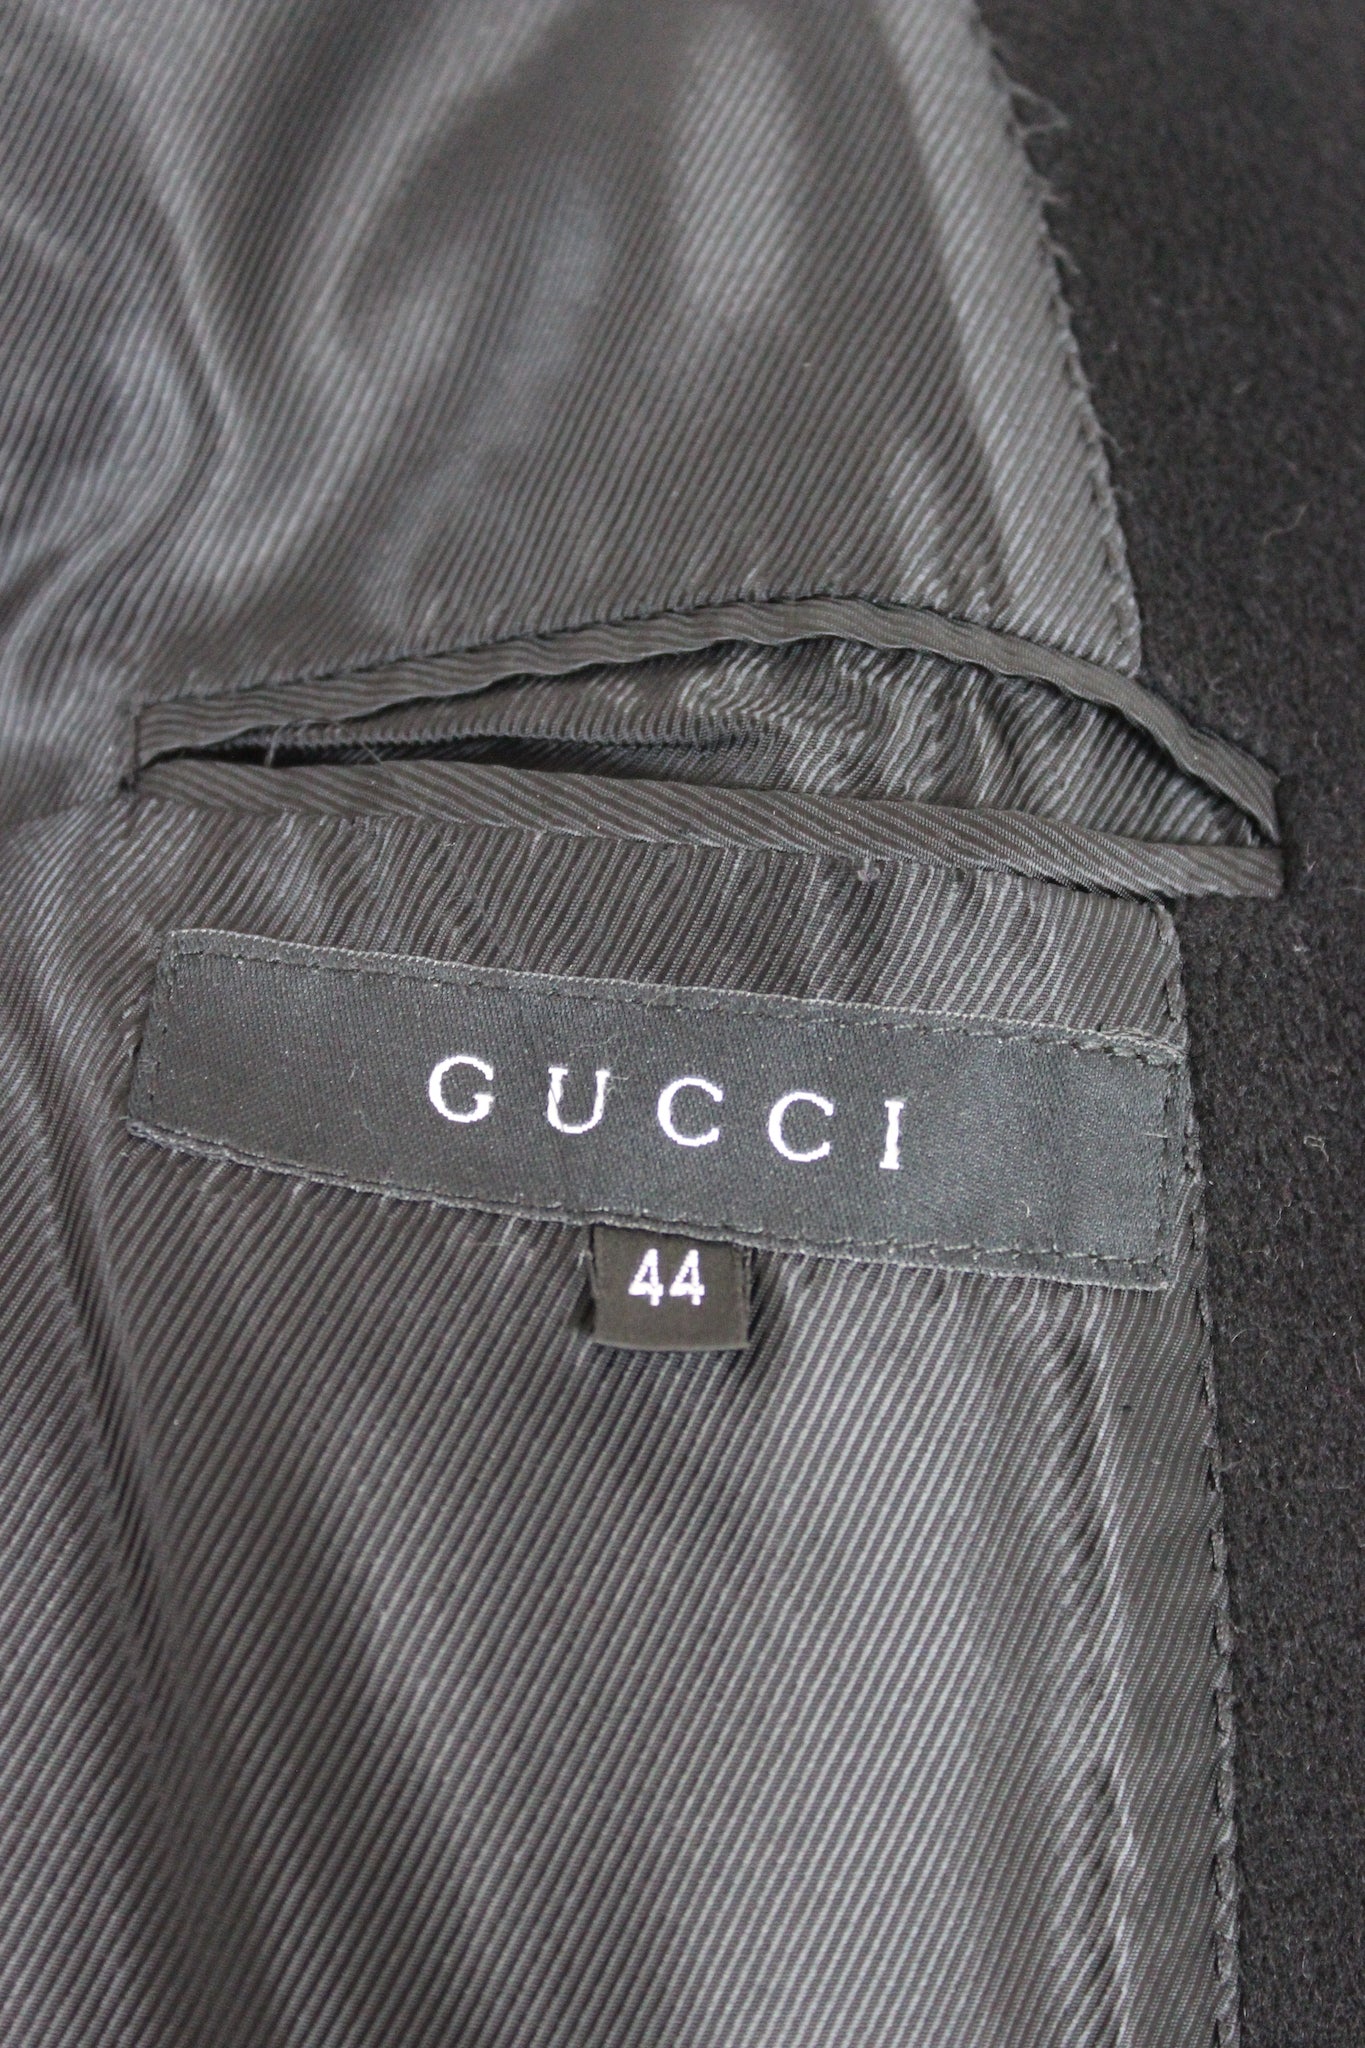 Gucci Black Cashmere Long Coat 2000s